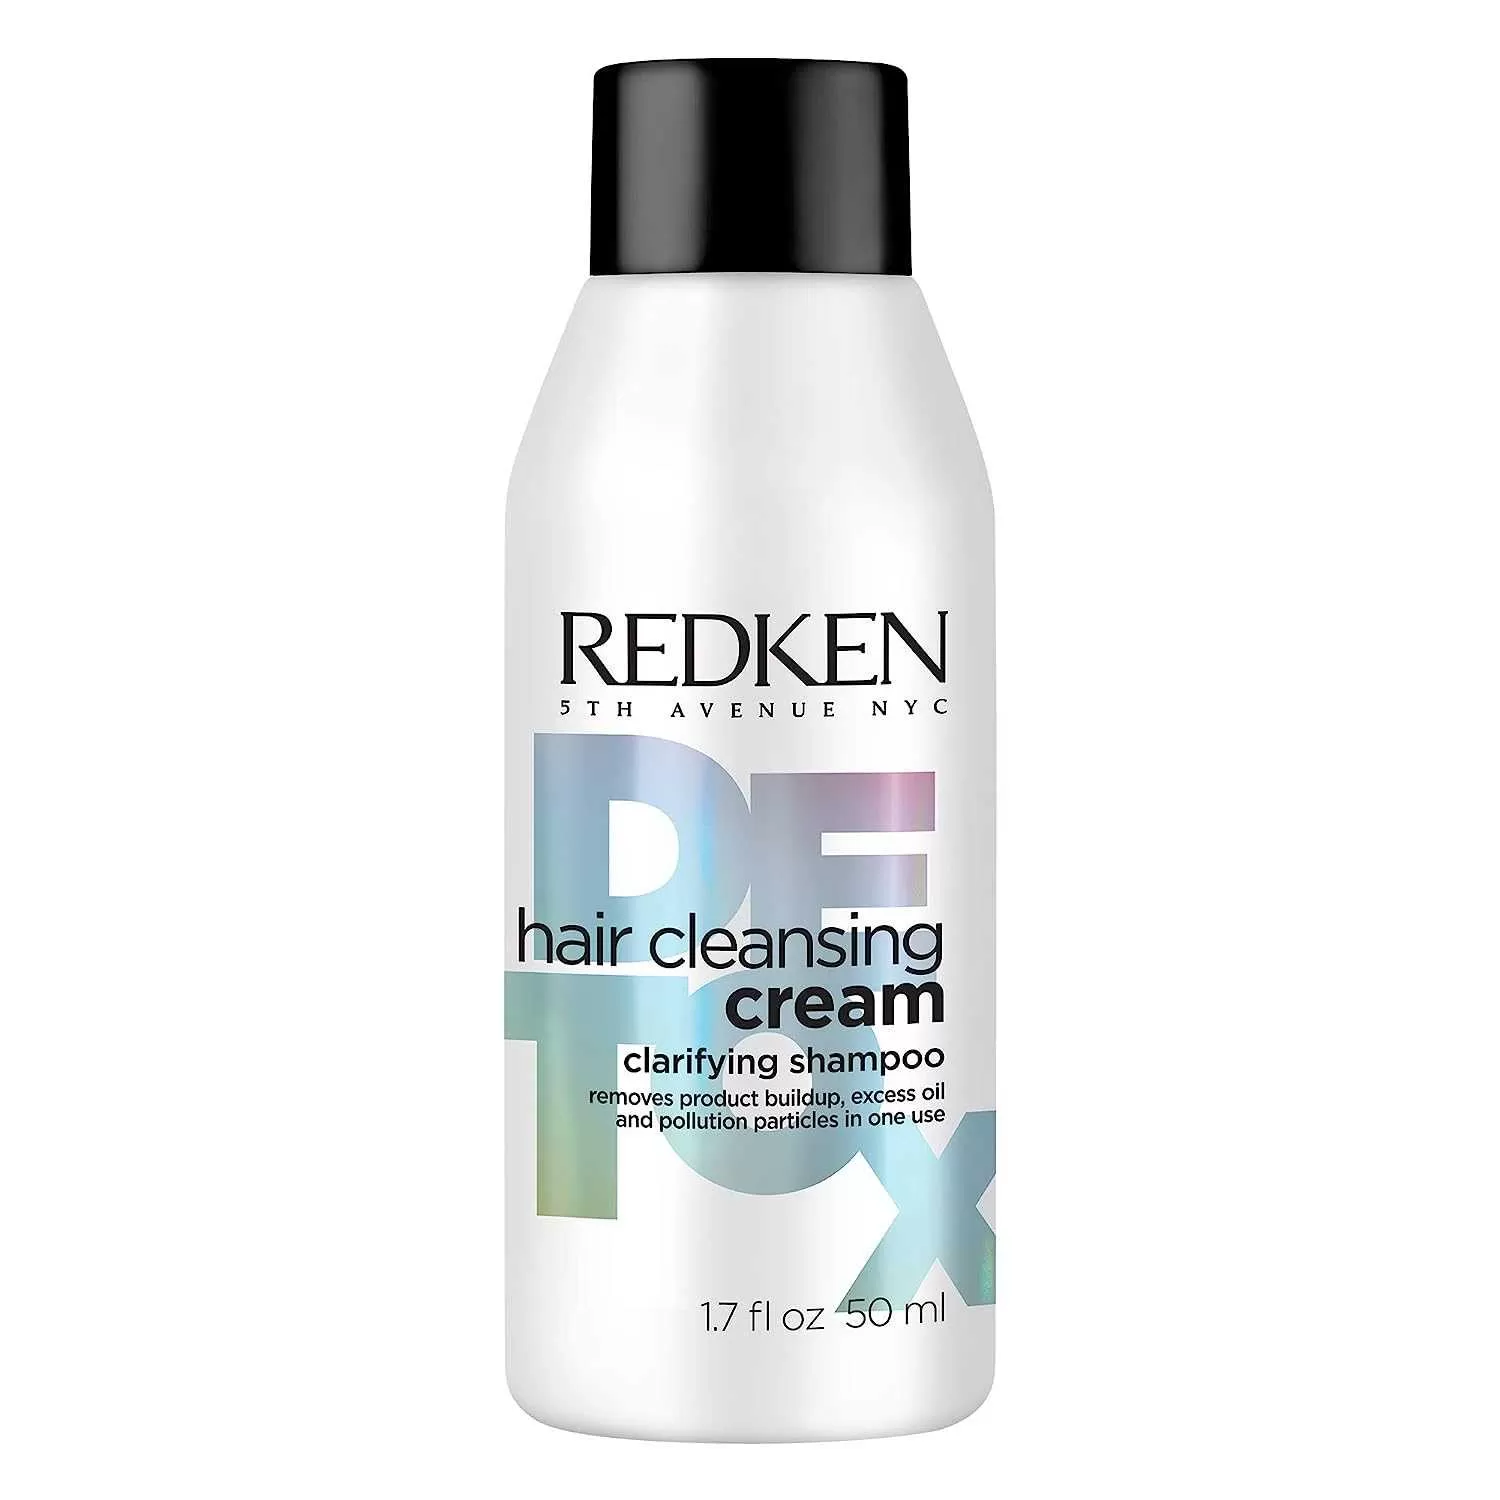 redken-hair-cleansing-cream-clarifying-shampoo-1688392606.webp